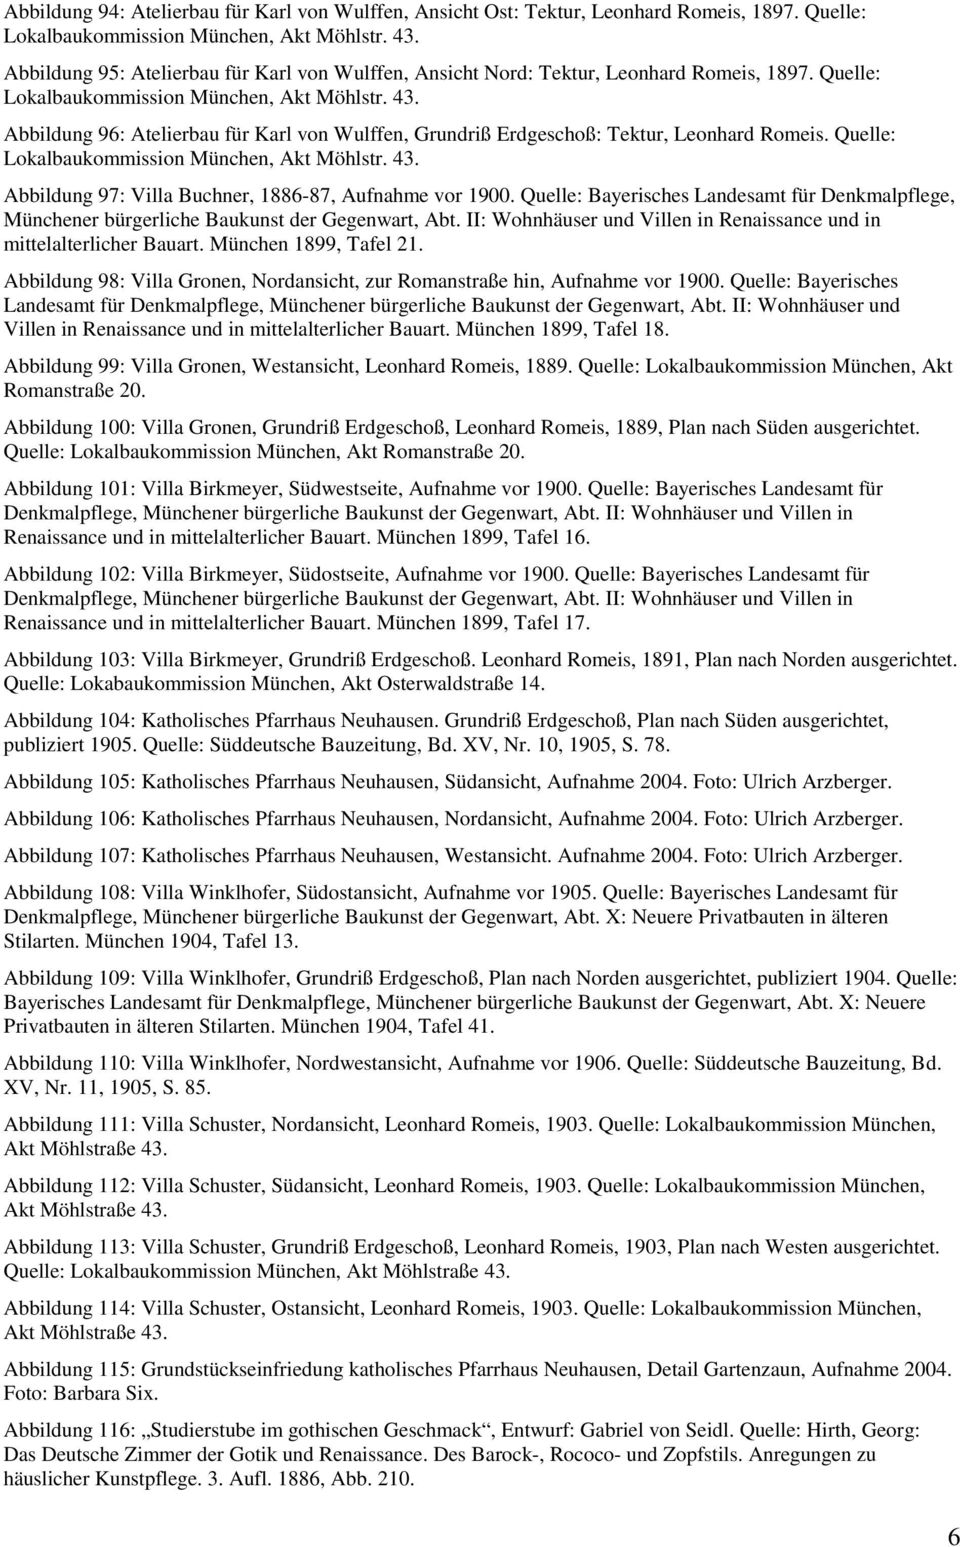 Quelle: Bayerisches Landesamt für Denkmalpflege, Münchener bürgerliche Baukunst der Gegenwart, Abt. II: Wohnhäuser und Villen in Renaissance und in mittelalterlicher Bauart. München 1899, Tafel 21.